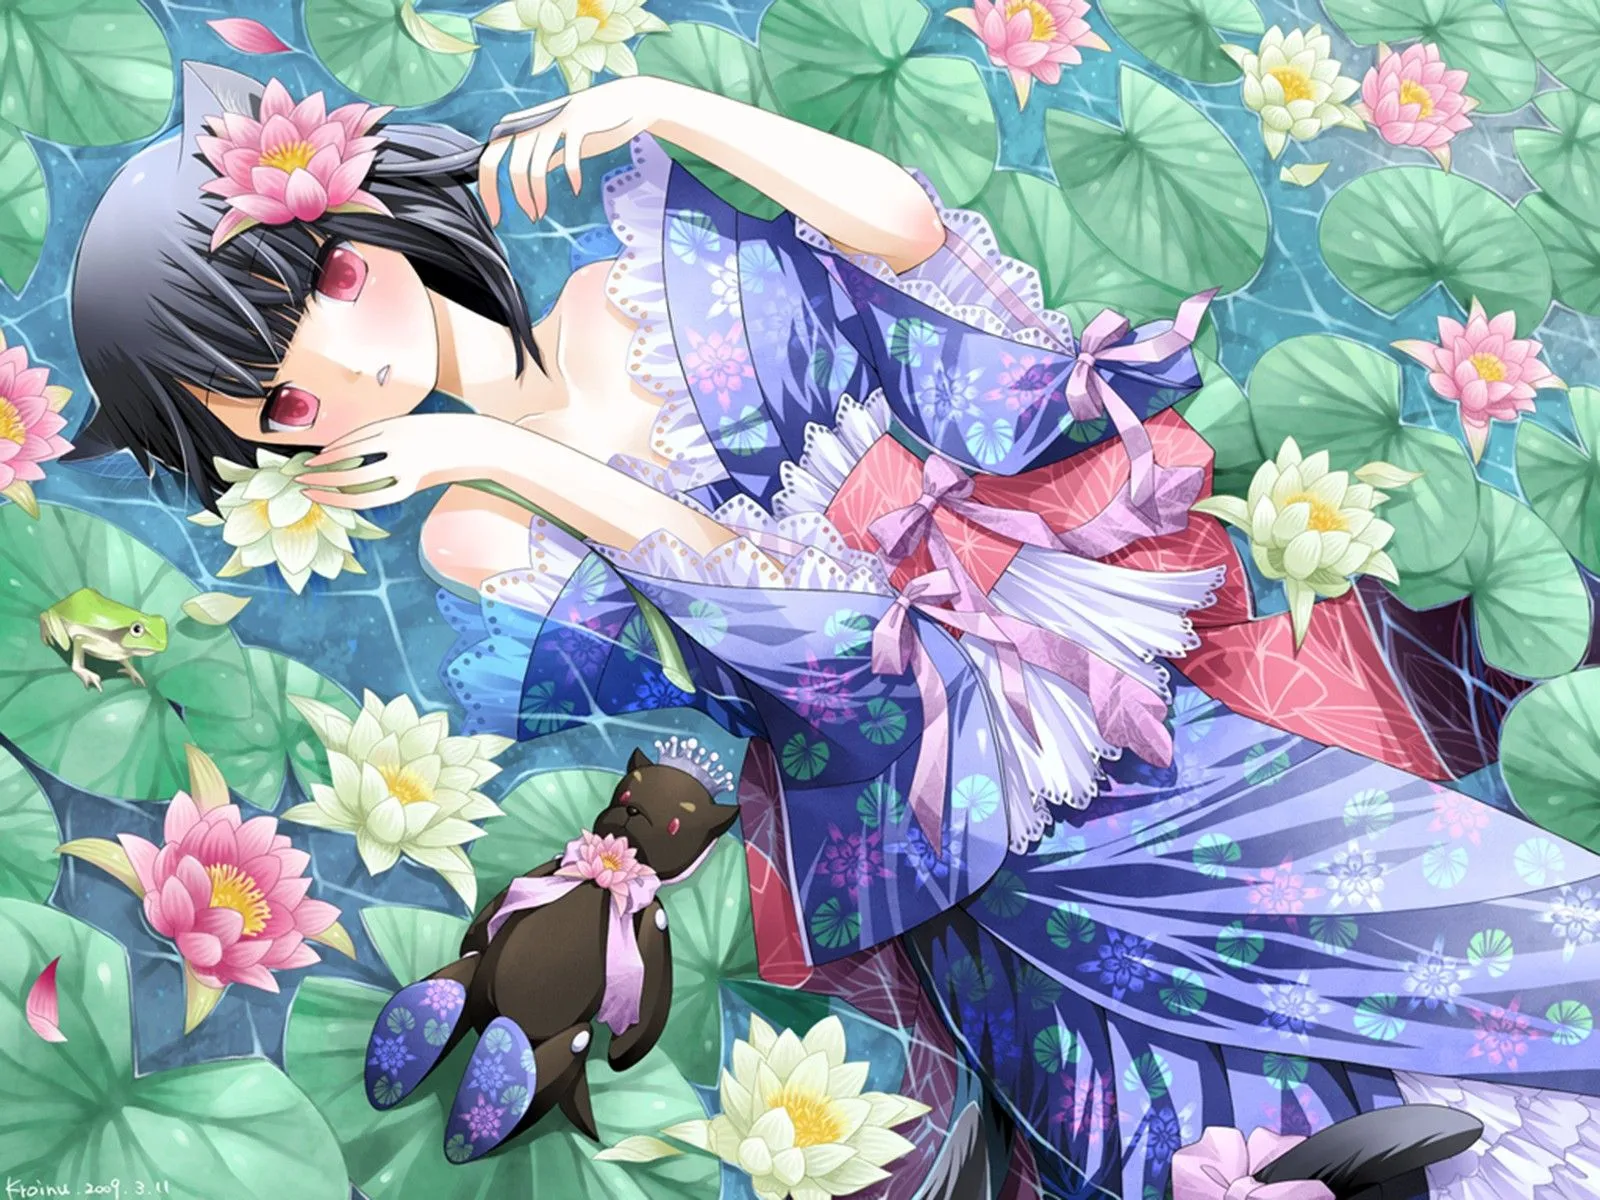 El Refugio de Rain: Imagenes estilo anime con flores 2